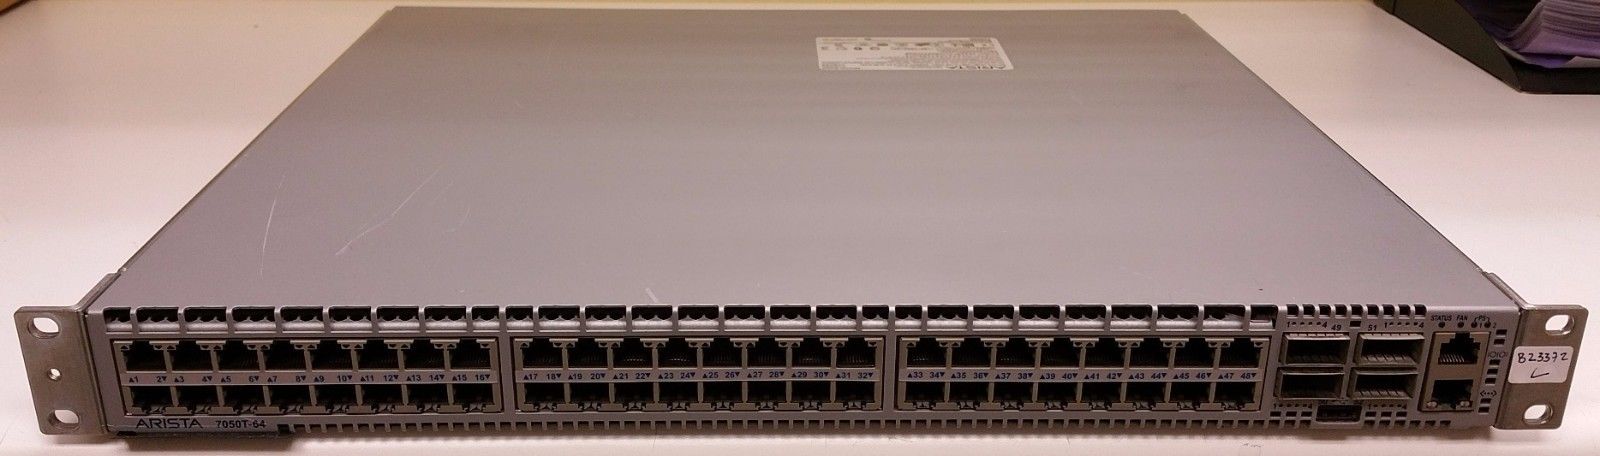 Lot 4x Arista DCS-7050T-64-F 10Gb Switches, 48x RJ45 1/10GB, 4x QSFP+, 2 AC PSU